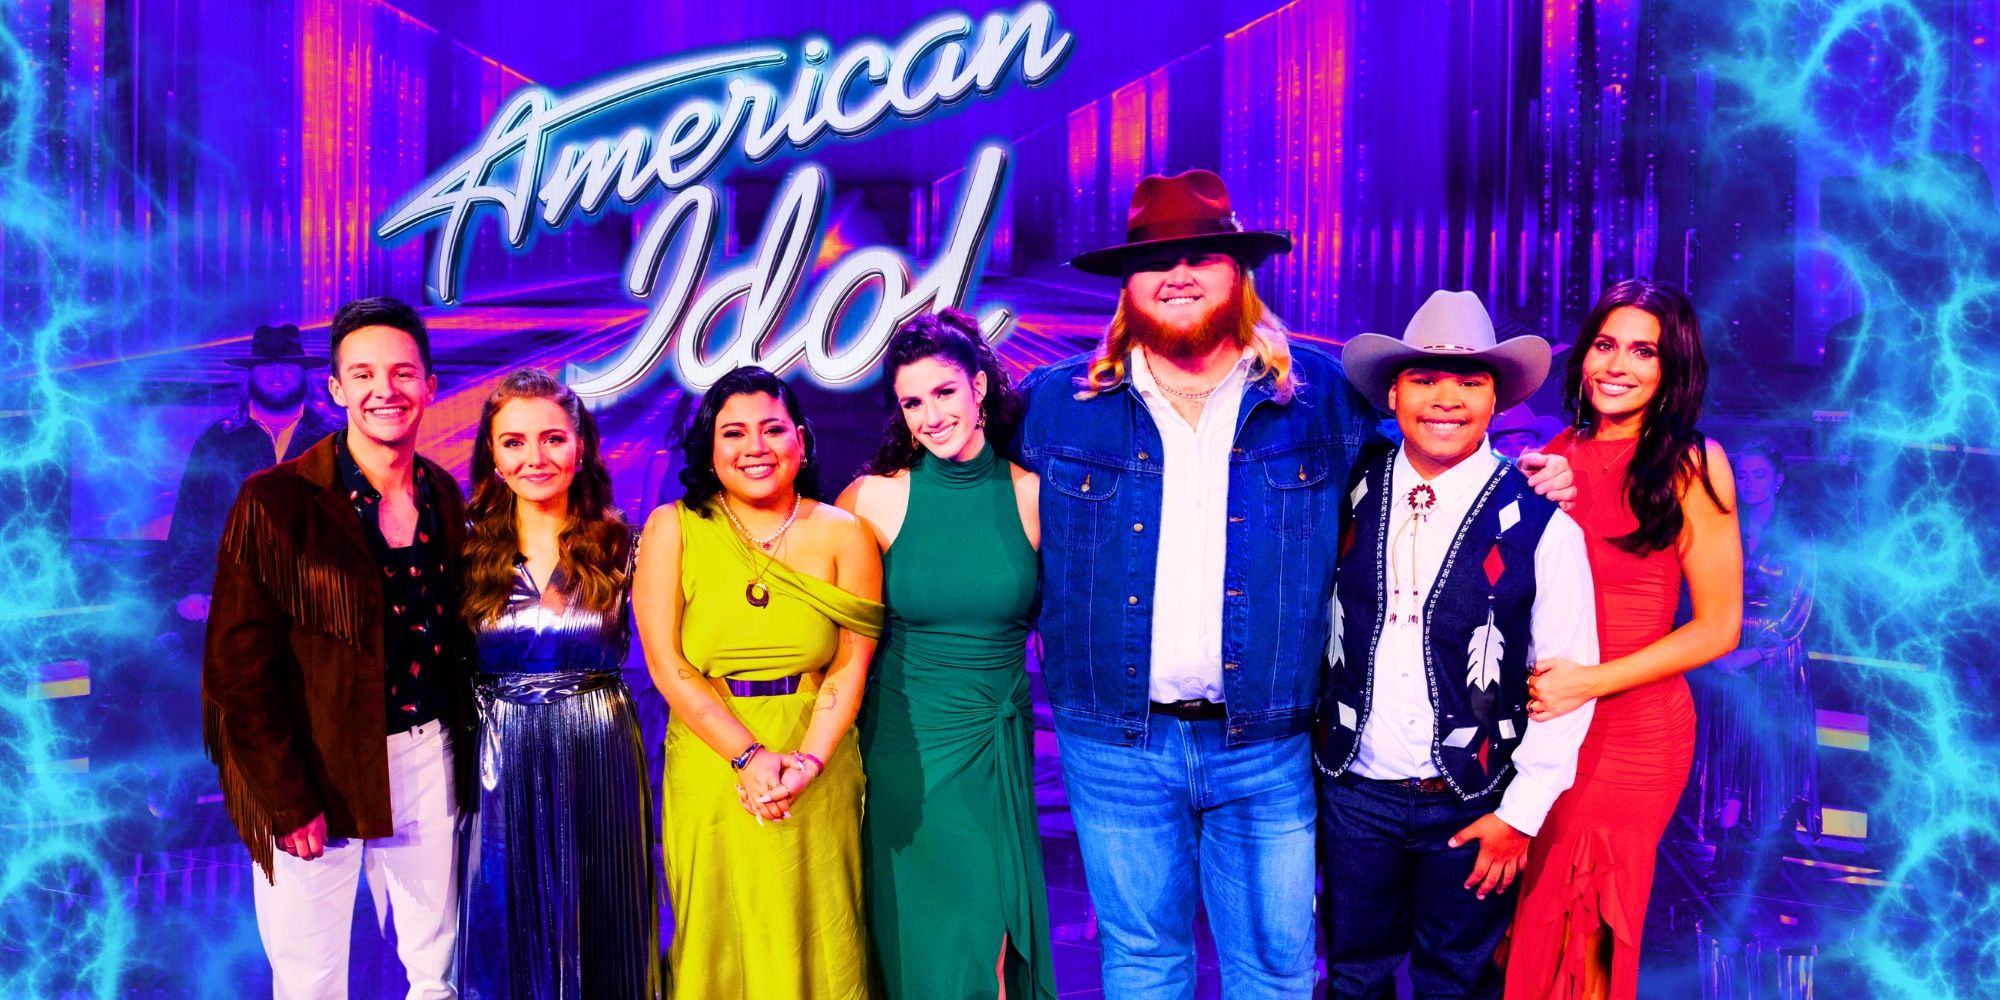 Los concursantes de American Idol revelan su estado de salud tras sufrir lesiones en un accidente de tráfico